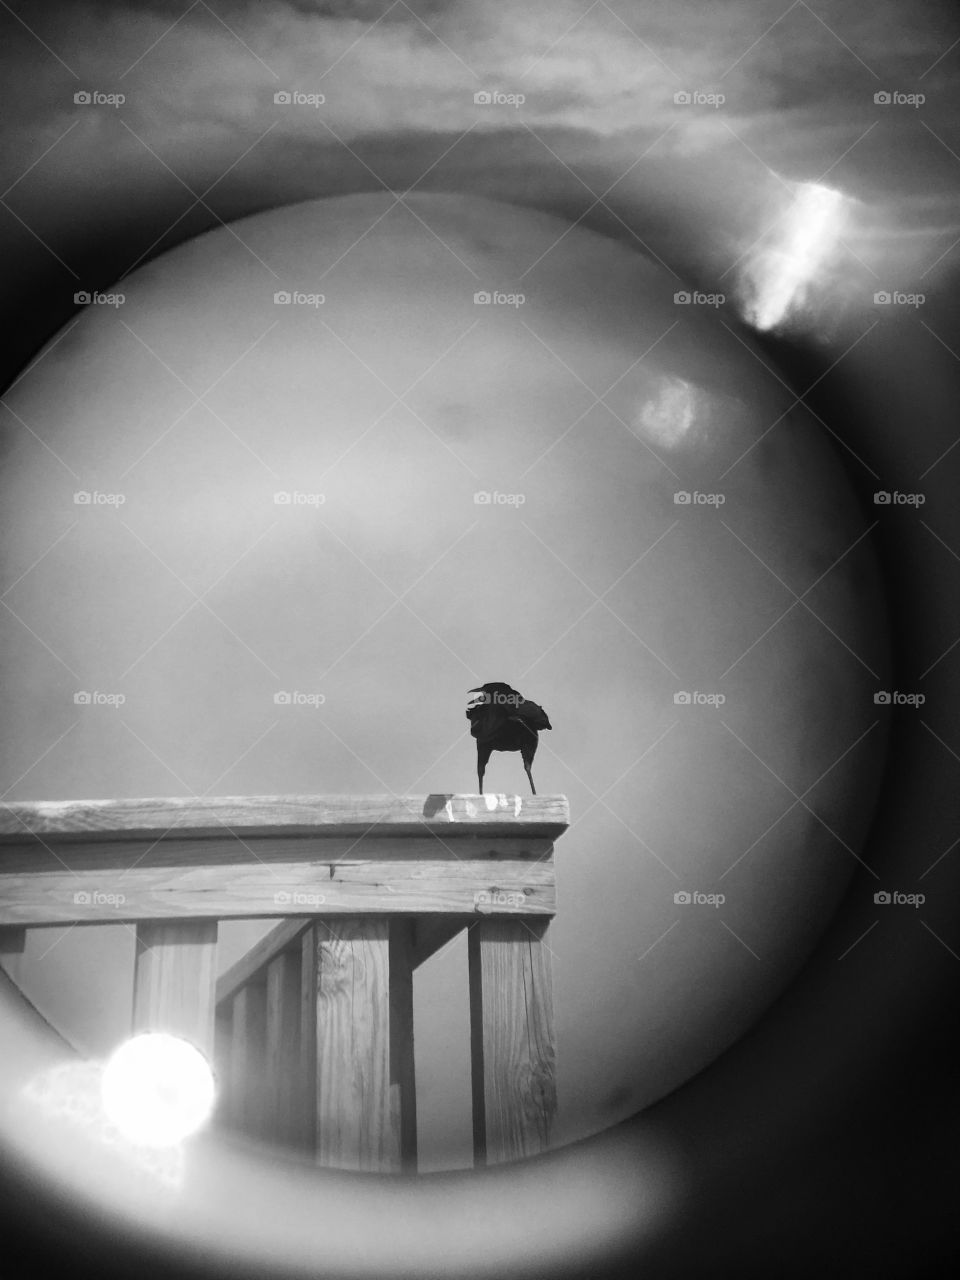 Bird through distance viewer